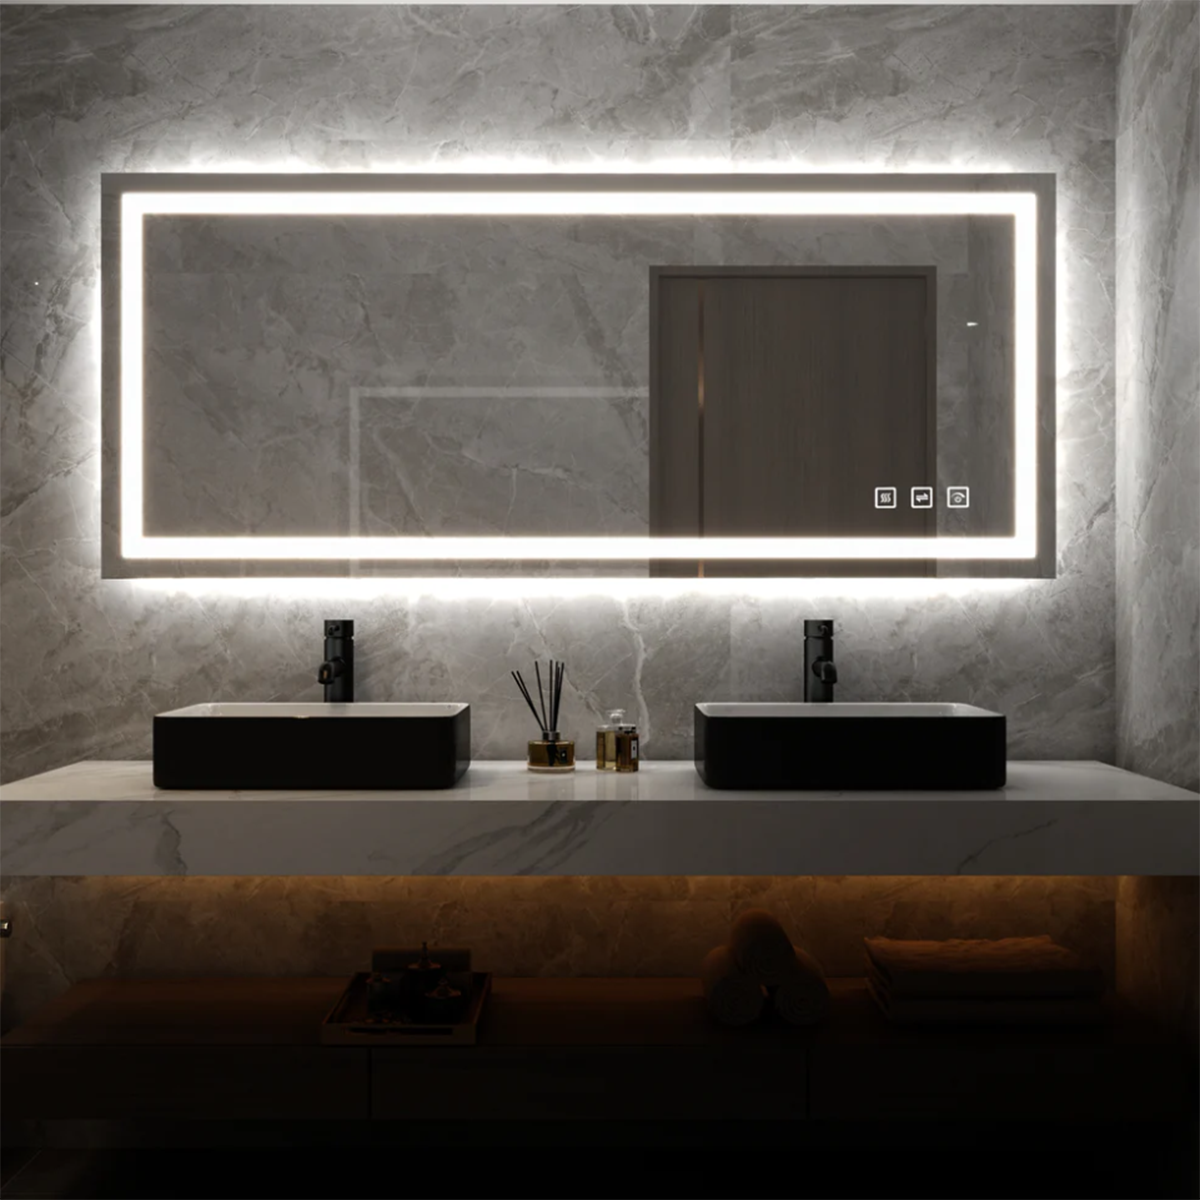 Gương đèn LED cảm ứng trong nhà tắm hiện đại.

Nguồn: toolkiss.com